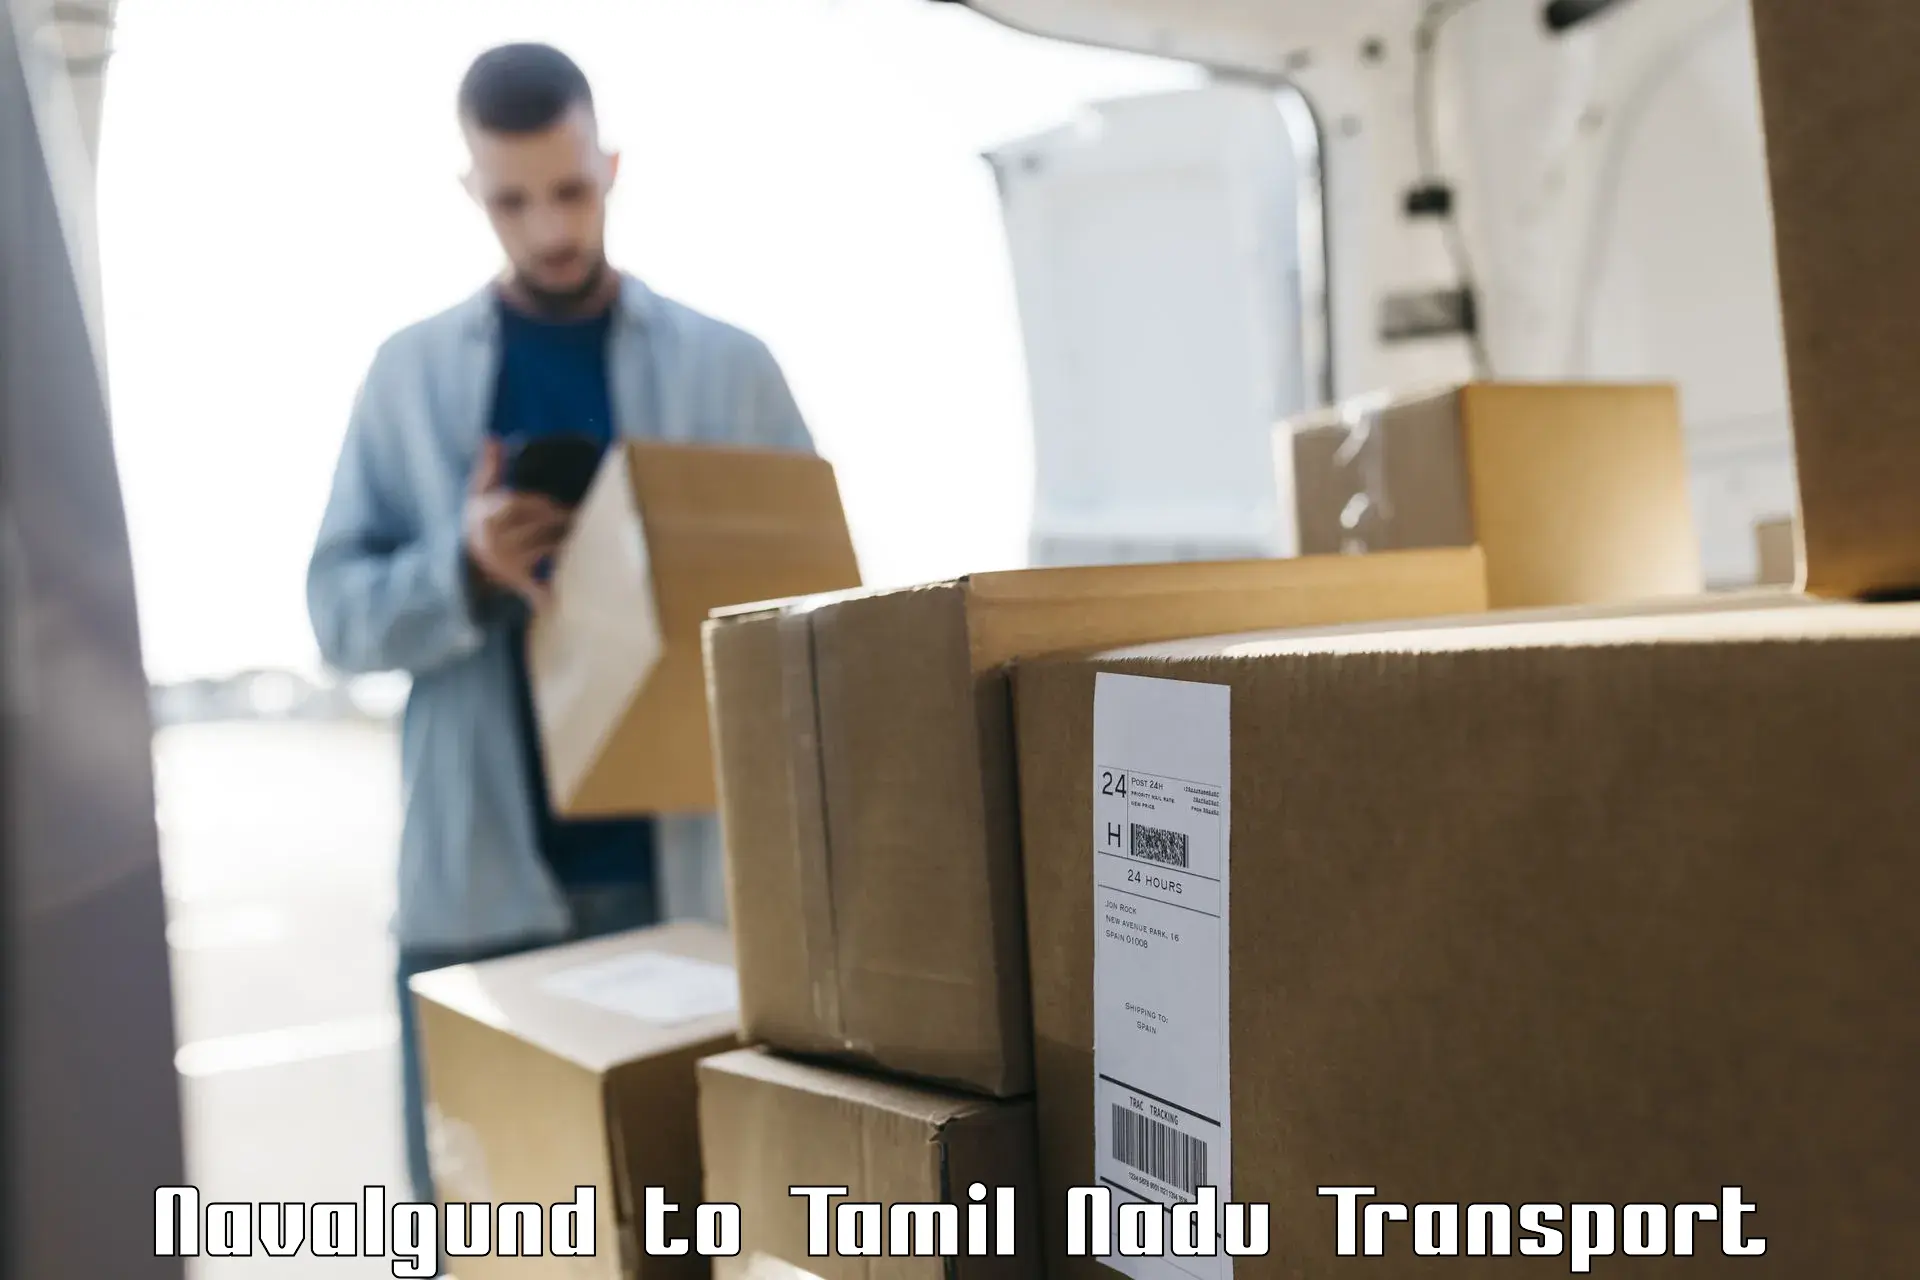 Goods delivery service Navalgund to Tamil Nadu